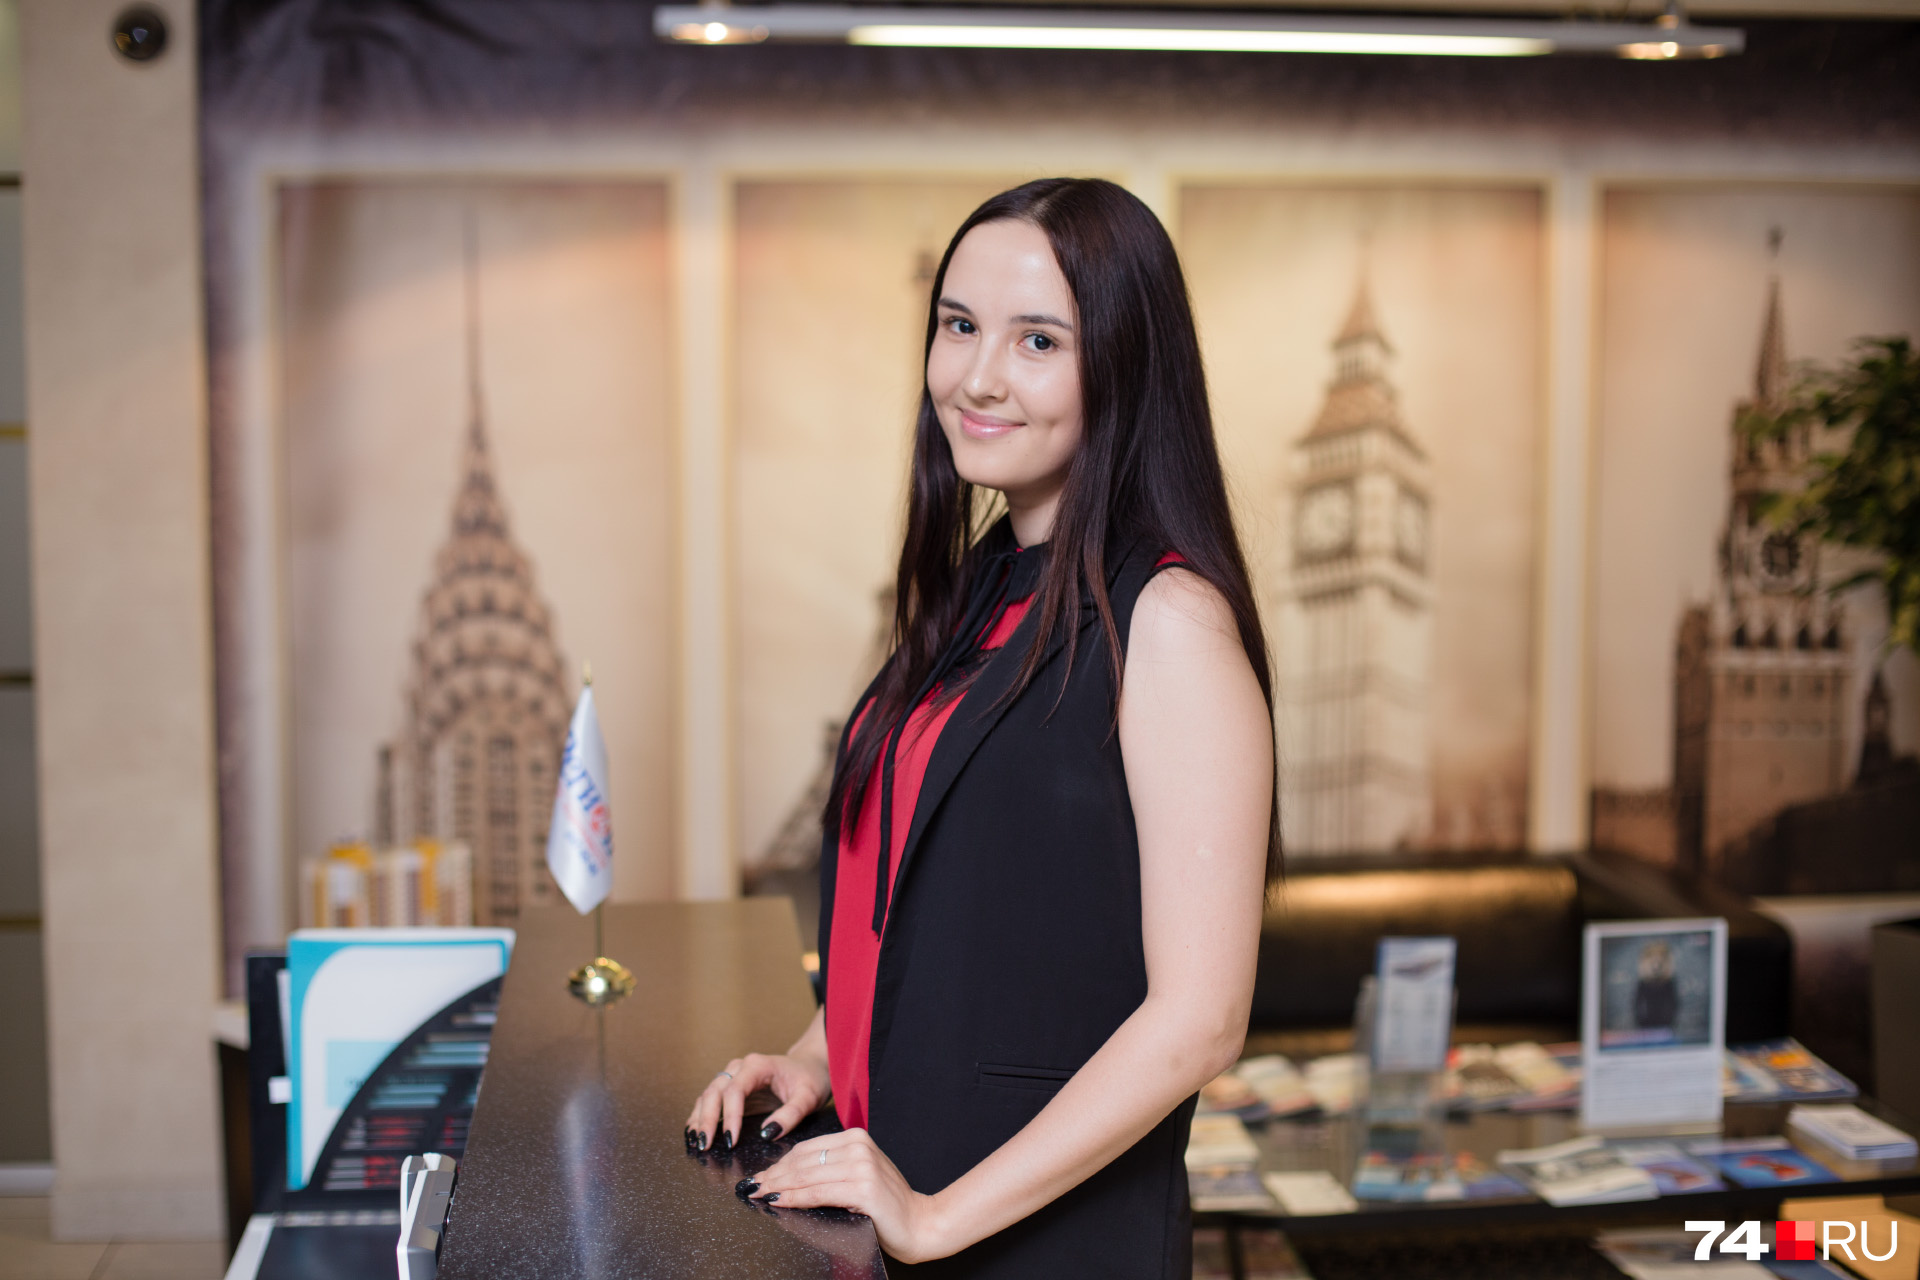 Секретарь
группы компаний «Регион 74» Екатерина
Шагиахметова любит угощать вкусным
кофе